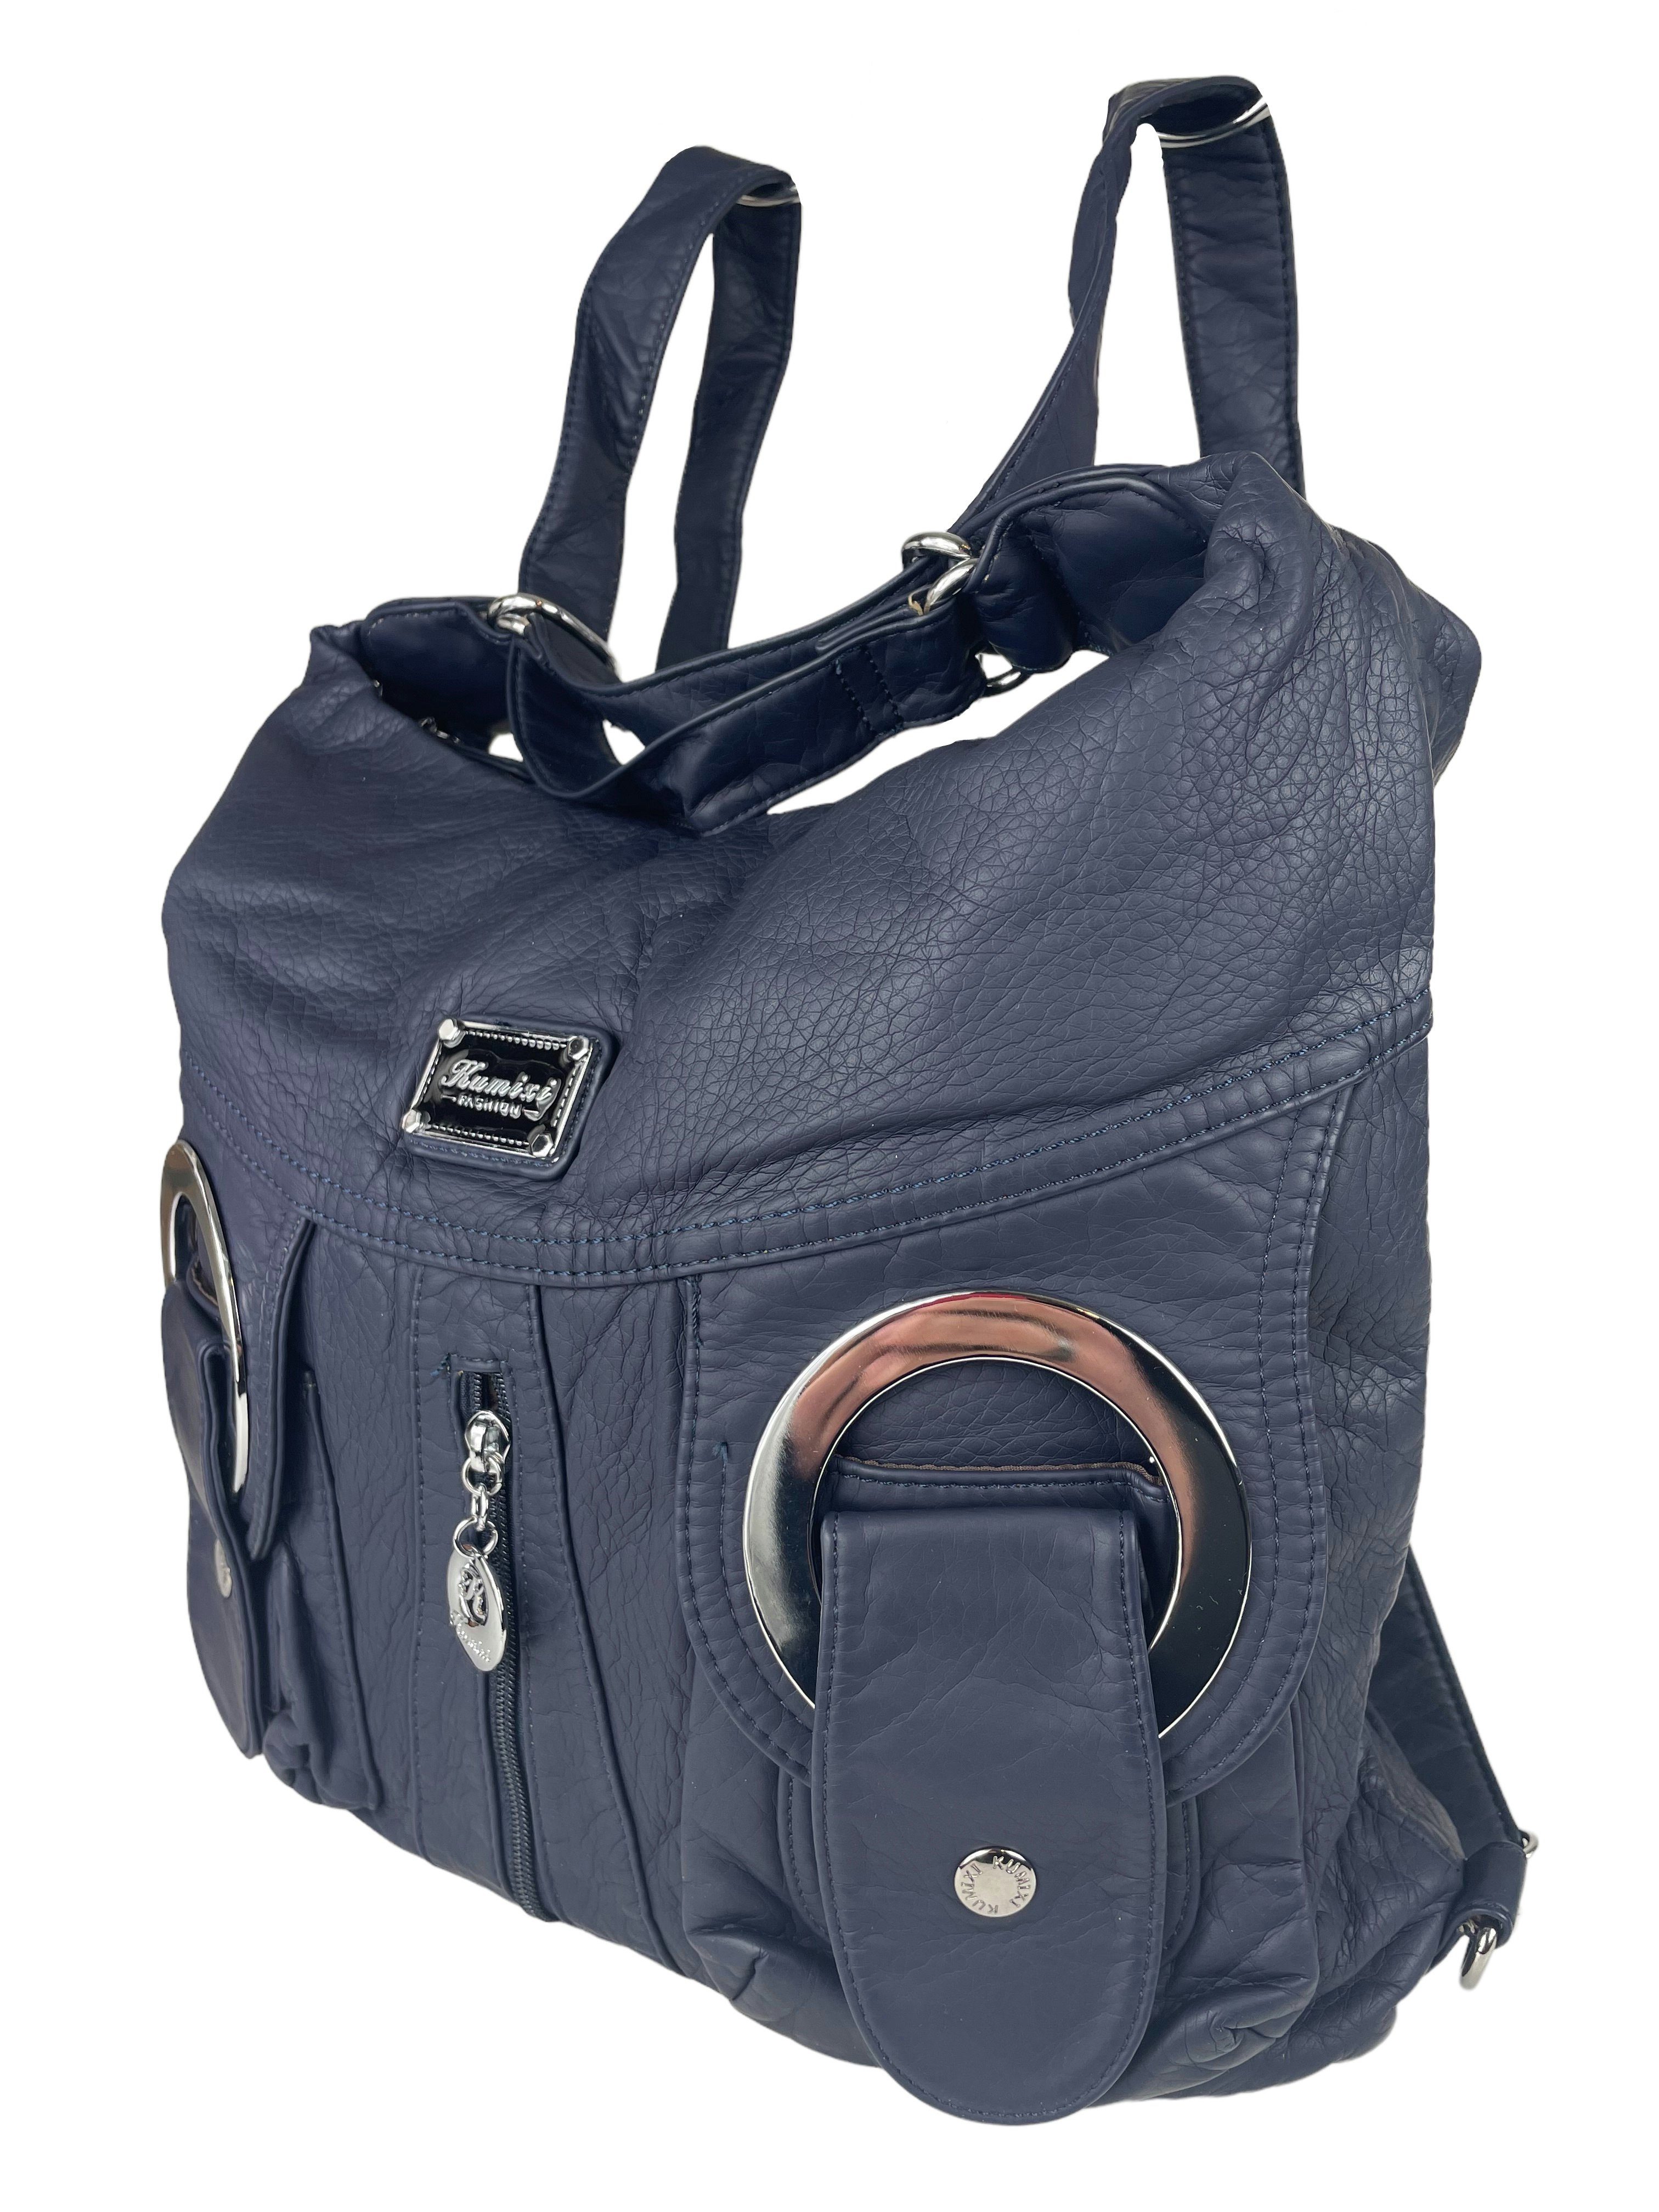 Taschen4life Schultertasche Rucksacktasche W6802 Multifunktionstasche, Tasche oder Rucksack, verstellbarer Schulterriemen, als Schultertasche oder Rucksack tragbar marine | Schultertaschen